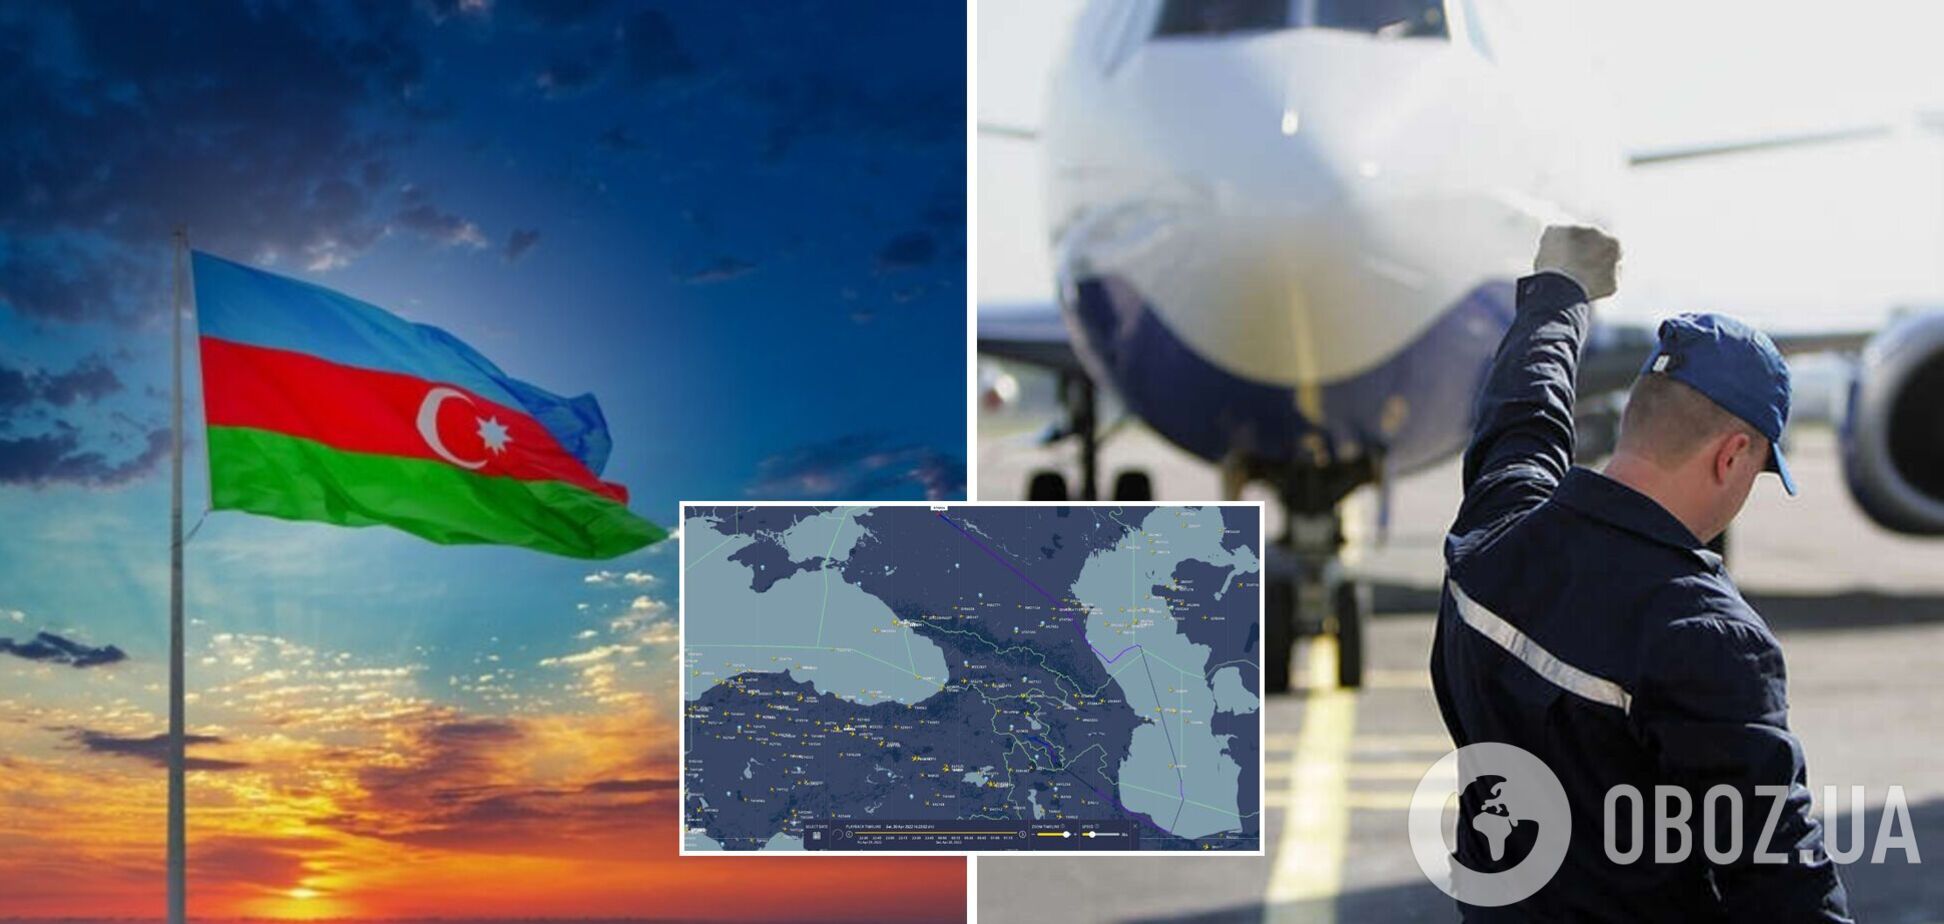 Азербайджан закрыл воздушное пространство для военных самолетов РФ, летящих в Сирию – СМИ